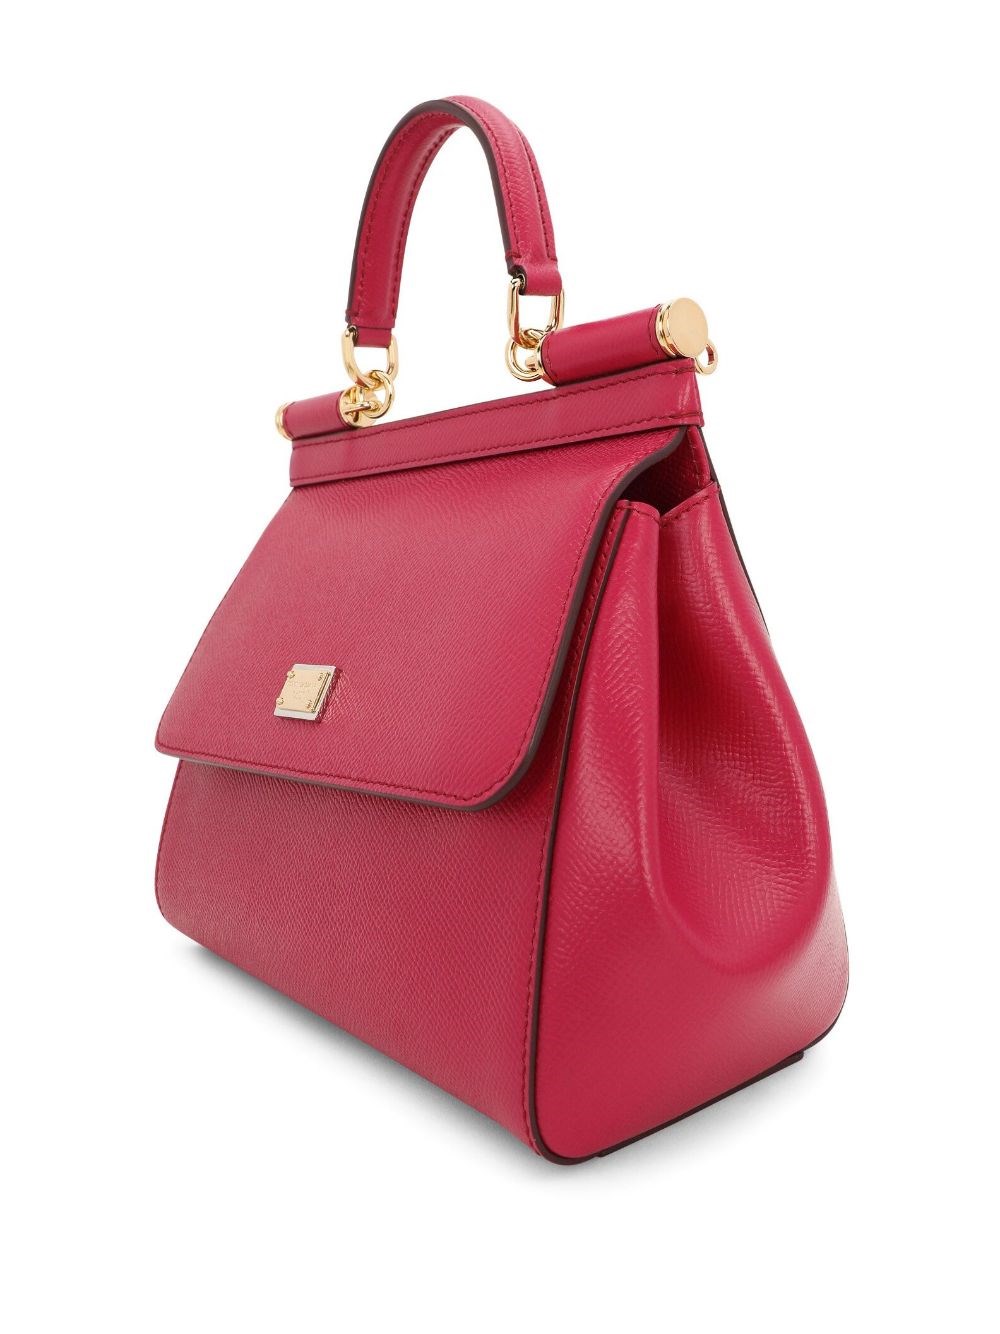 DOLCE & GABBANA Sicily Bag Large Raspberry Leather Bag -  Sweden